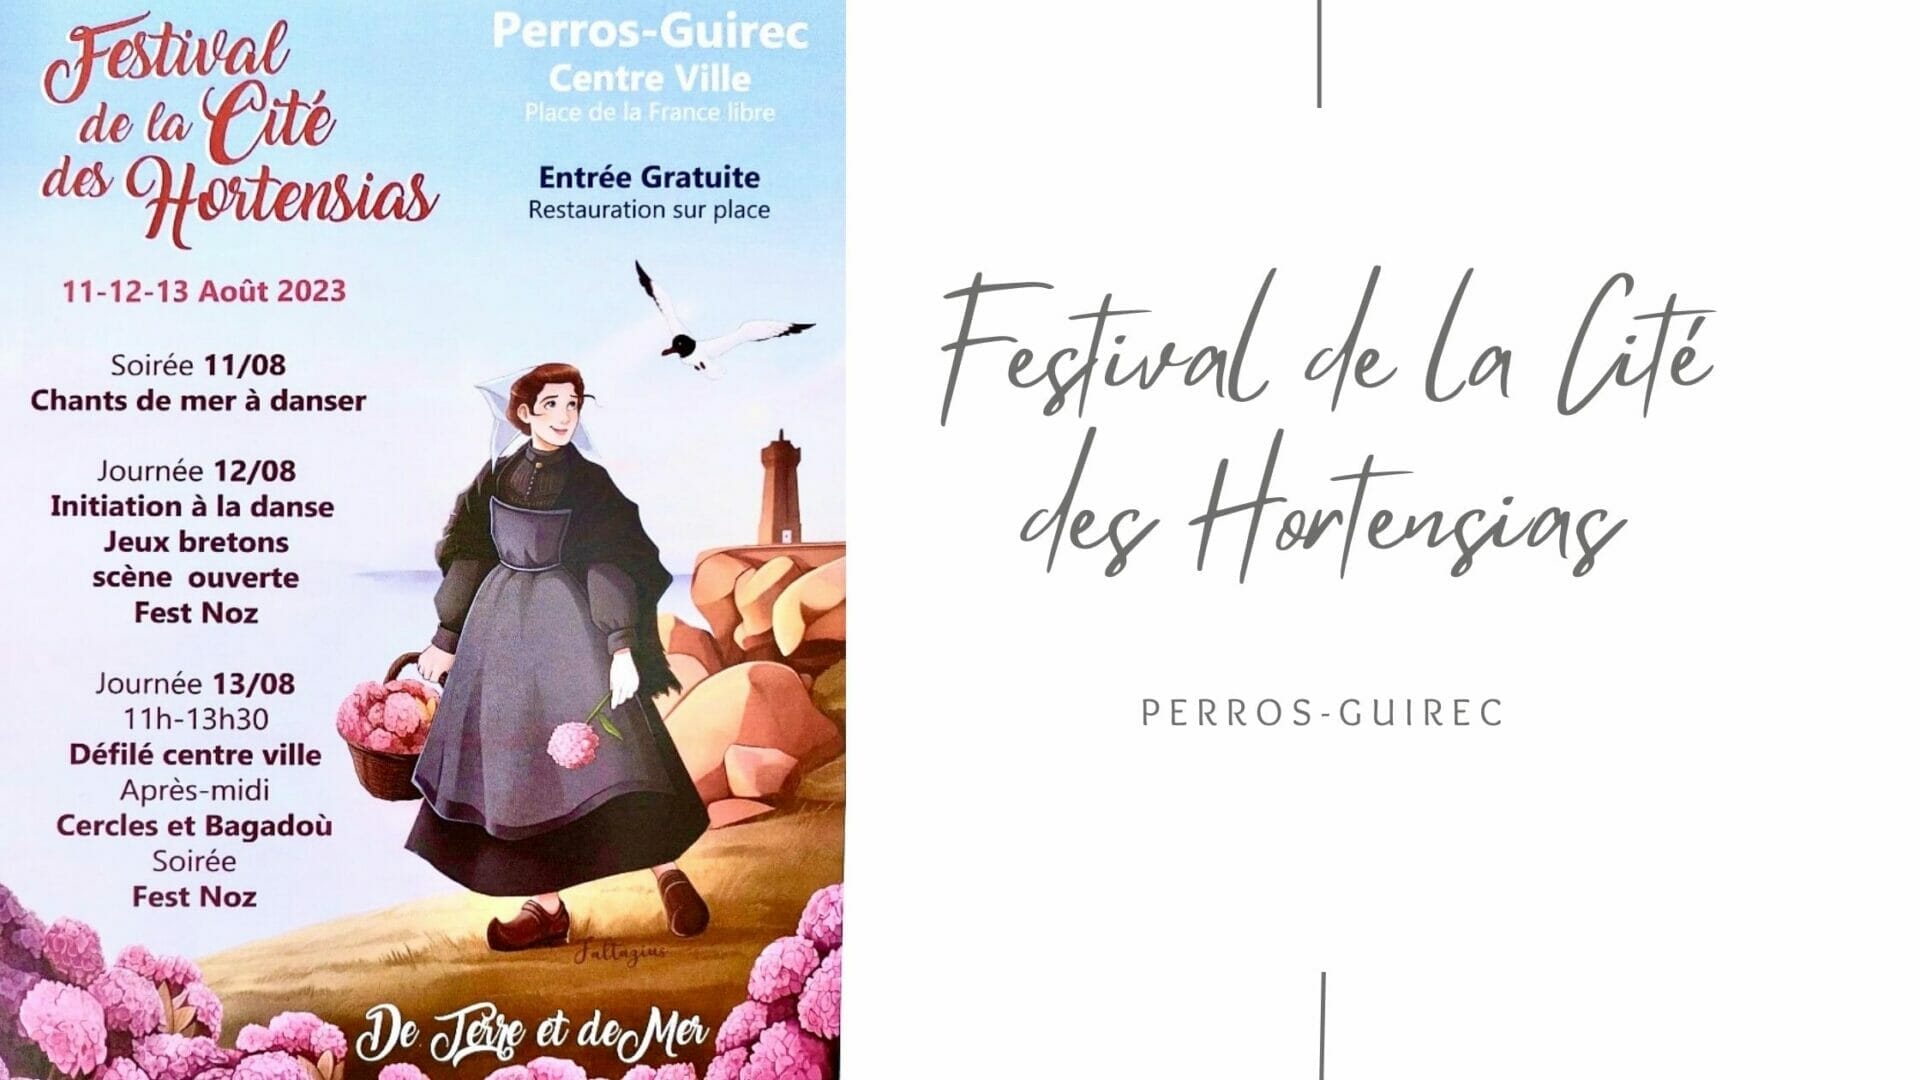 Festival de la Cité des Hortensias, 11 au 13 août 2023 à Perros-Guirec (22)